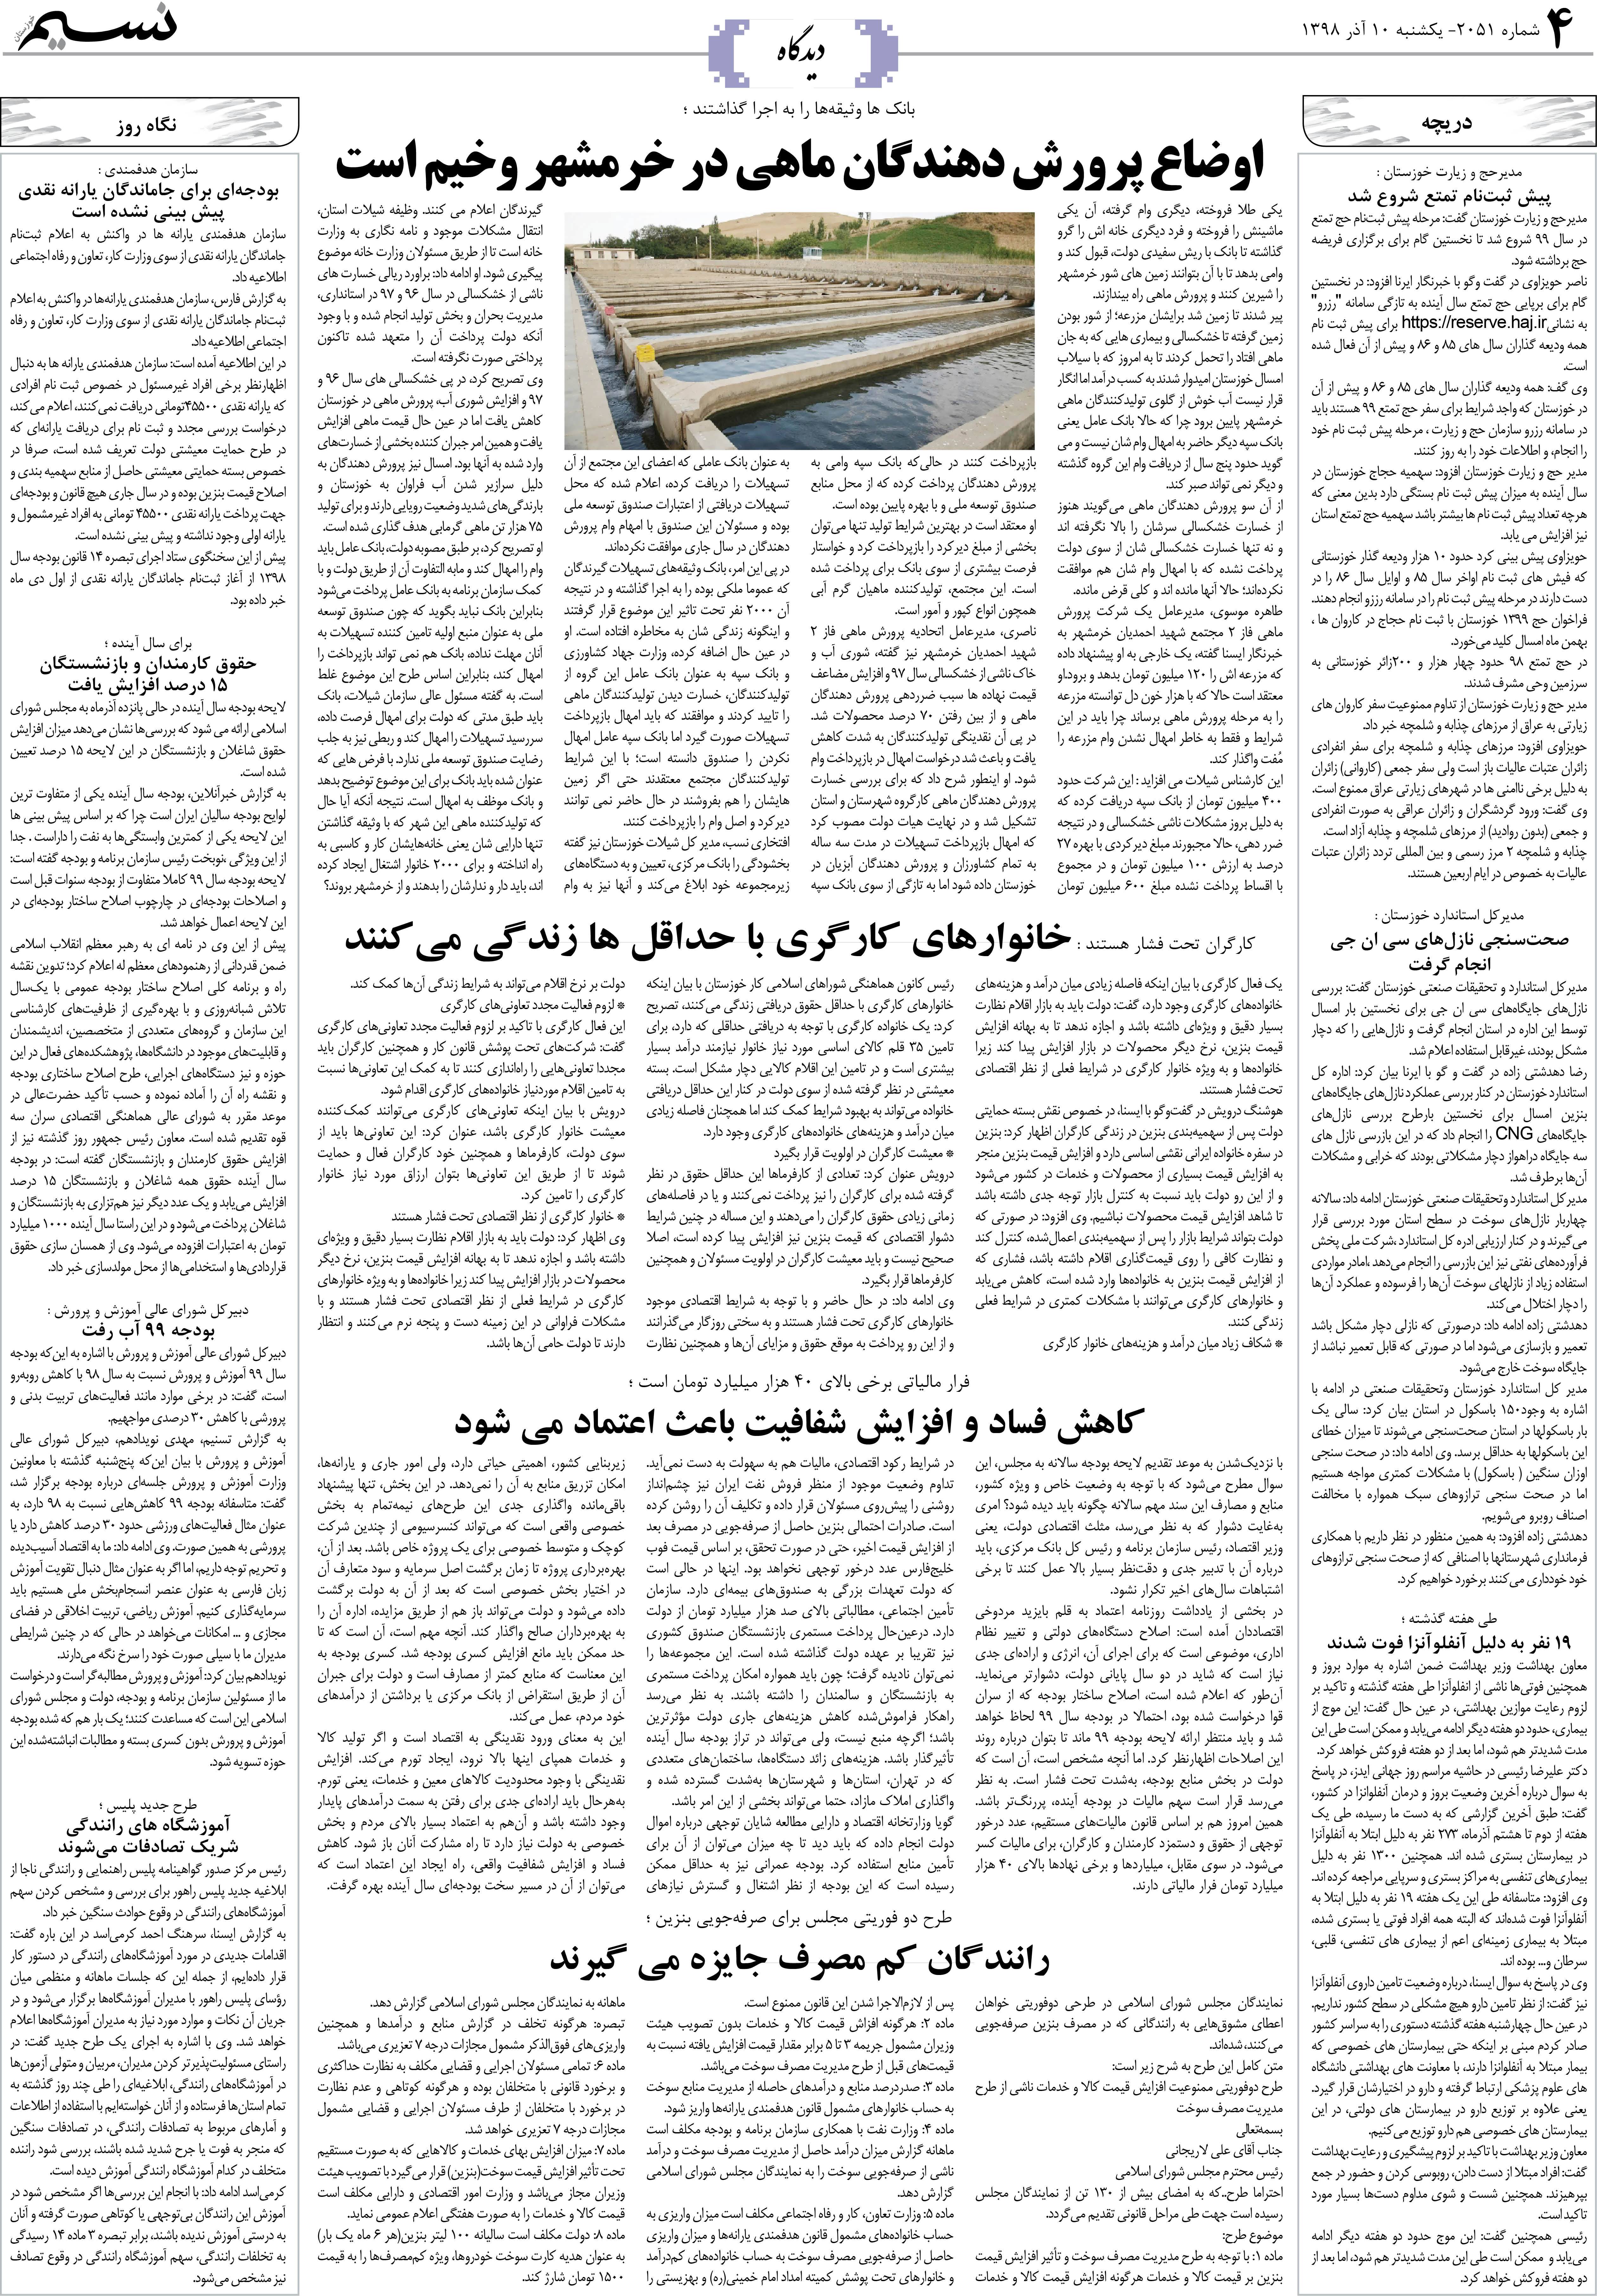 صفحه دیدگاه روزنامه نسیم شماره 2051